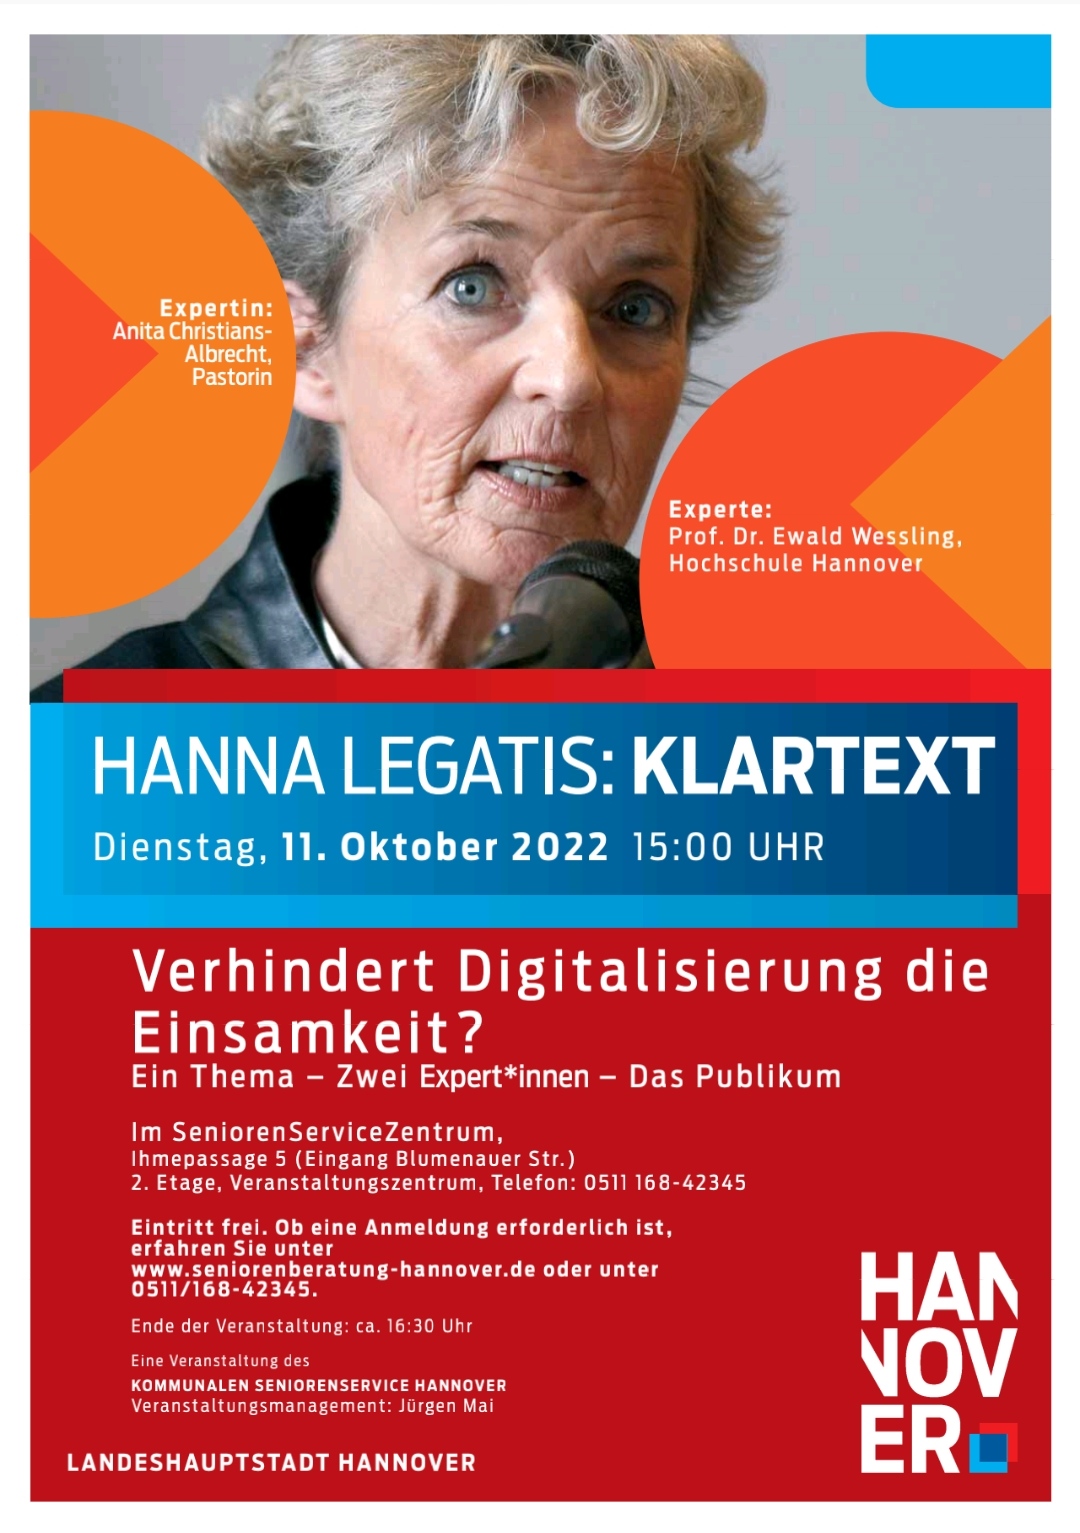  Hanna Legatis: Verhindert Digitalisierung die Einsamkeit?